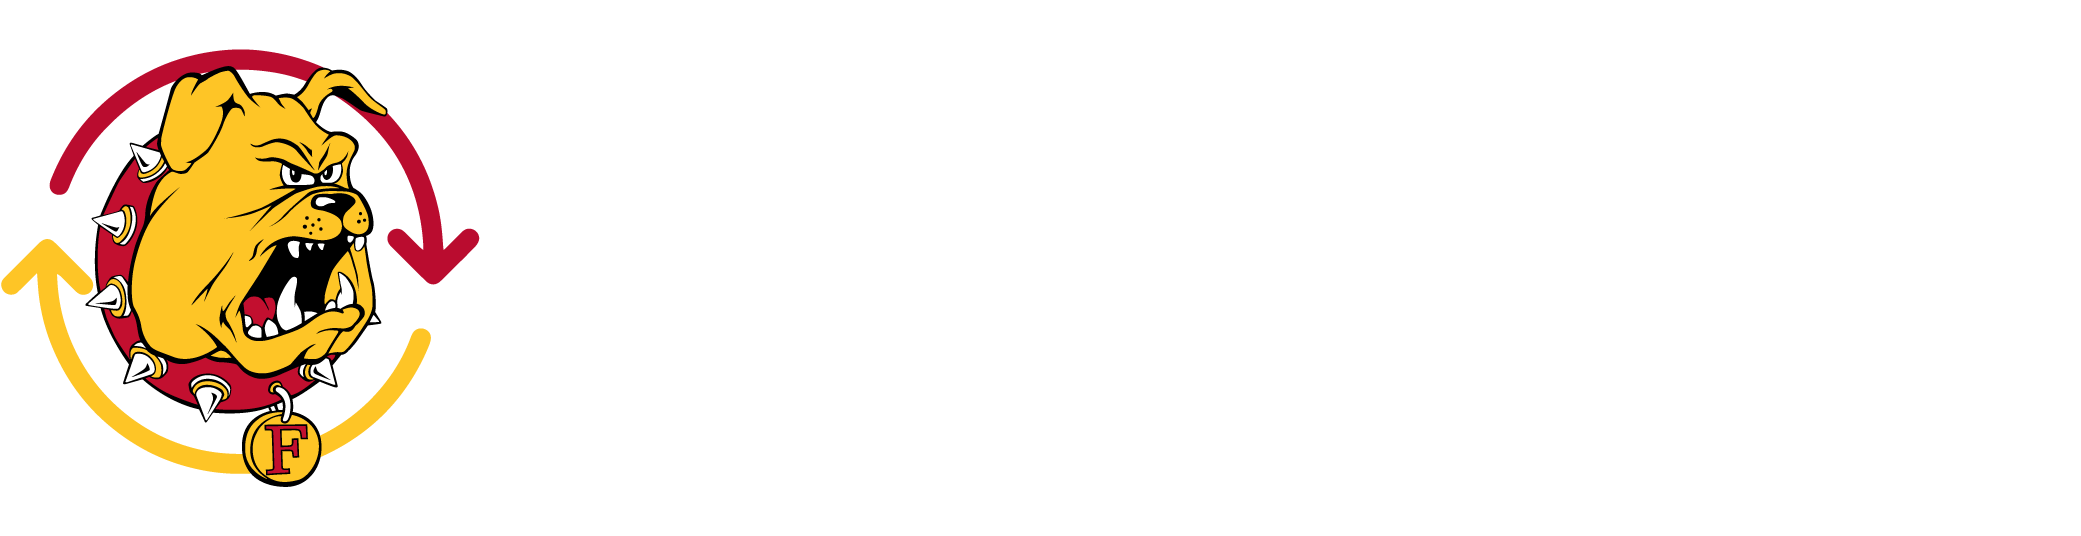 Ferris360 logo